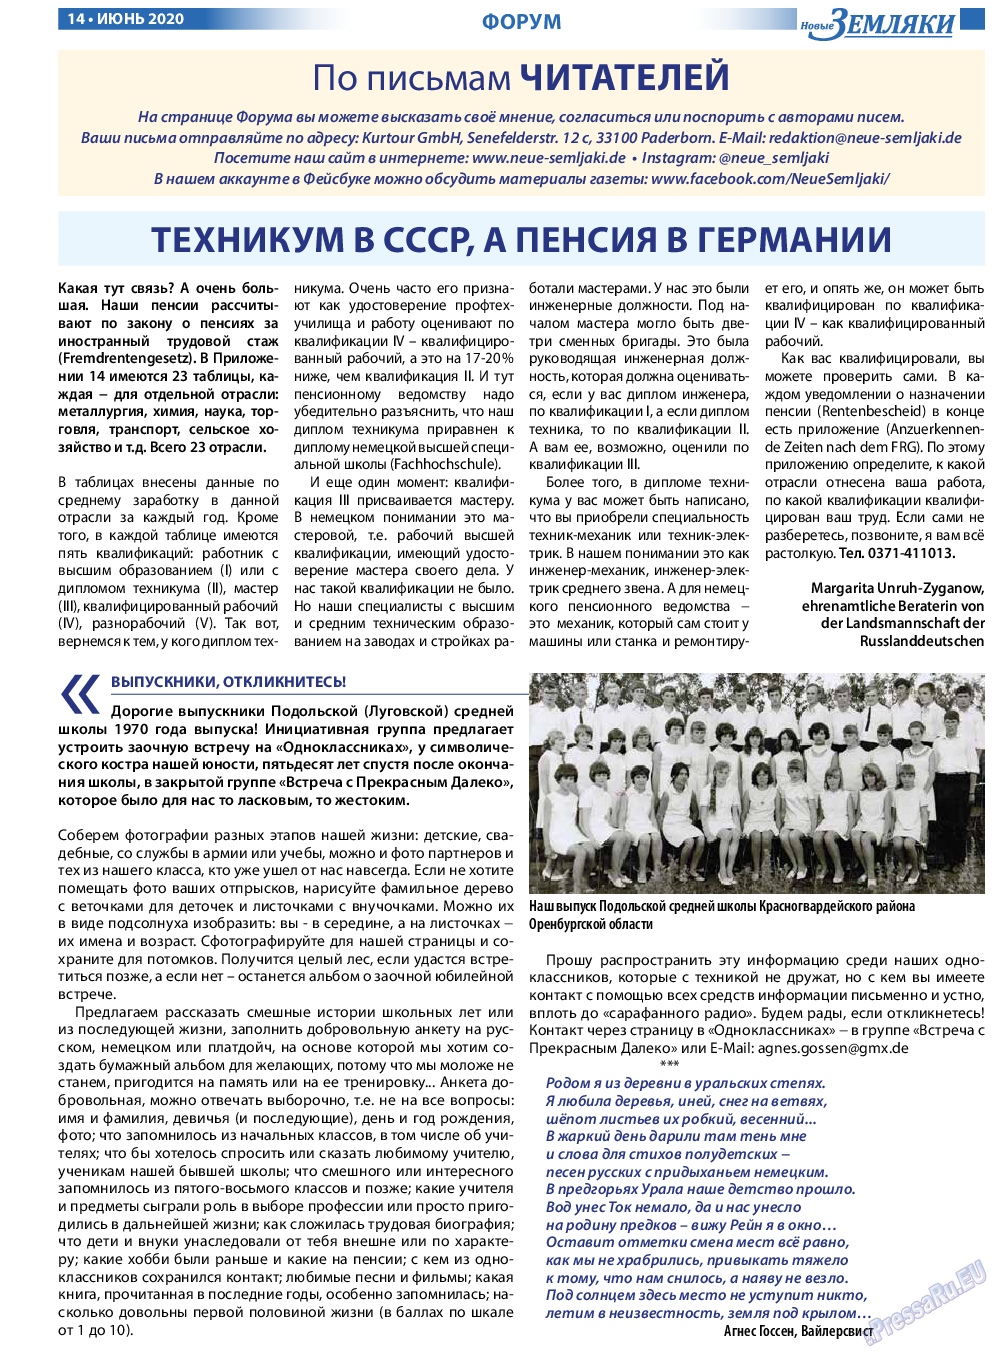 Новые Земляки, газета. 2020 №6 стр.14